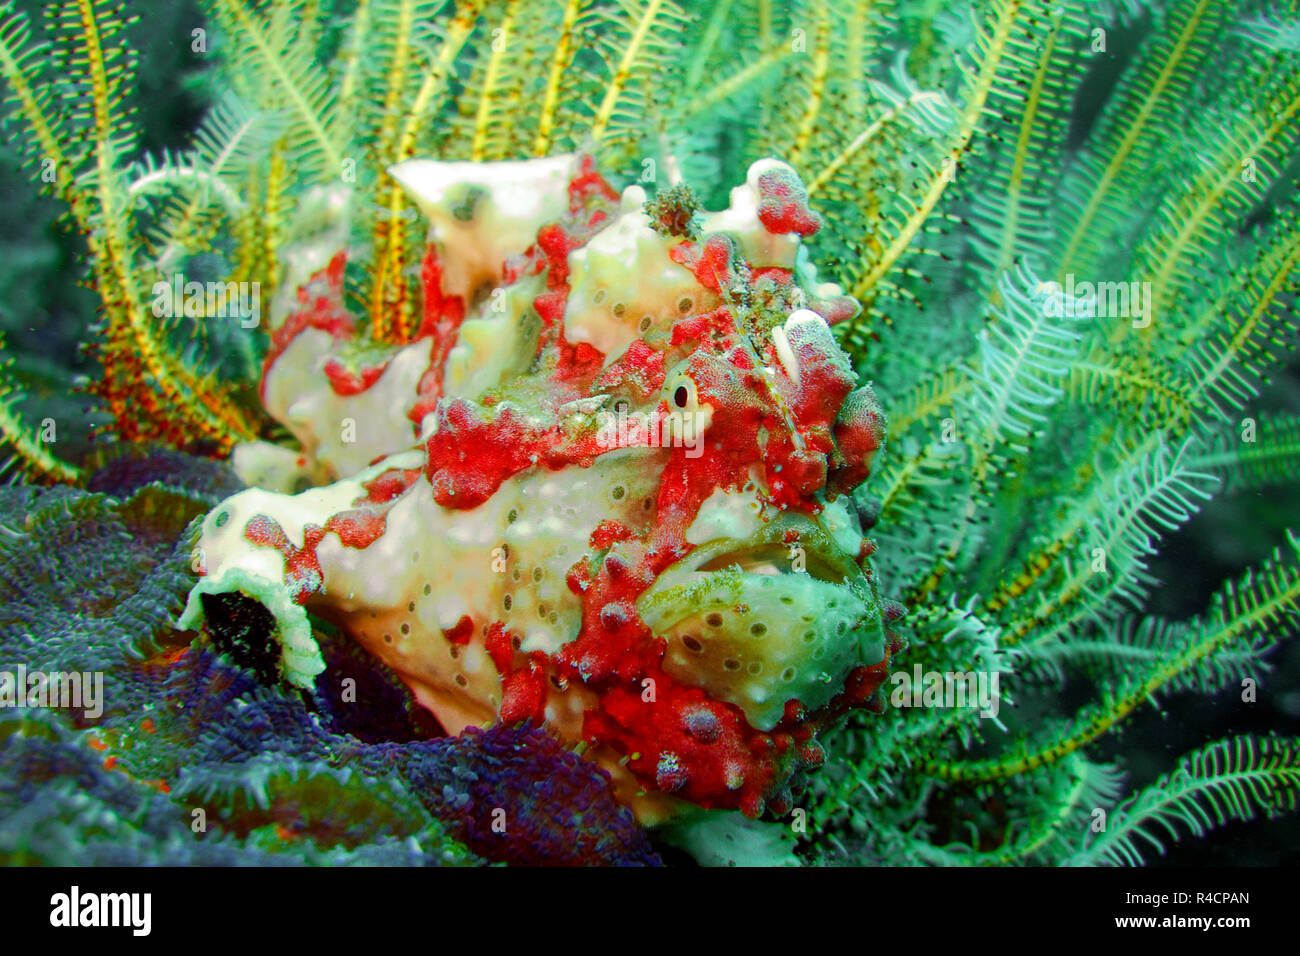 Rana pescatrice presenta verrucosa o Clown amglerfish (Antennarius maculatus) a un crinoide giallo (Crinoidea), Sabang Bach, Mindoro, Filippine Foto Stock